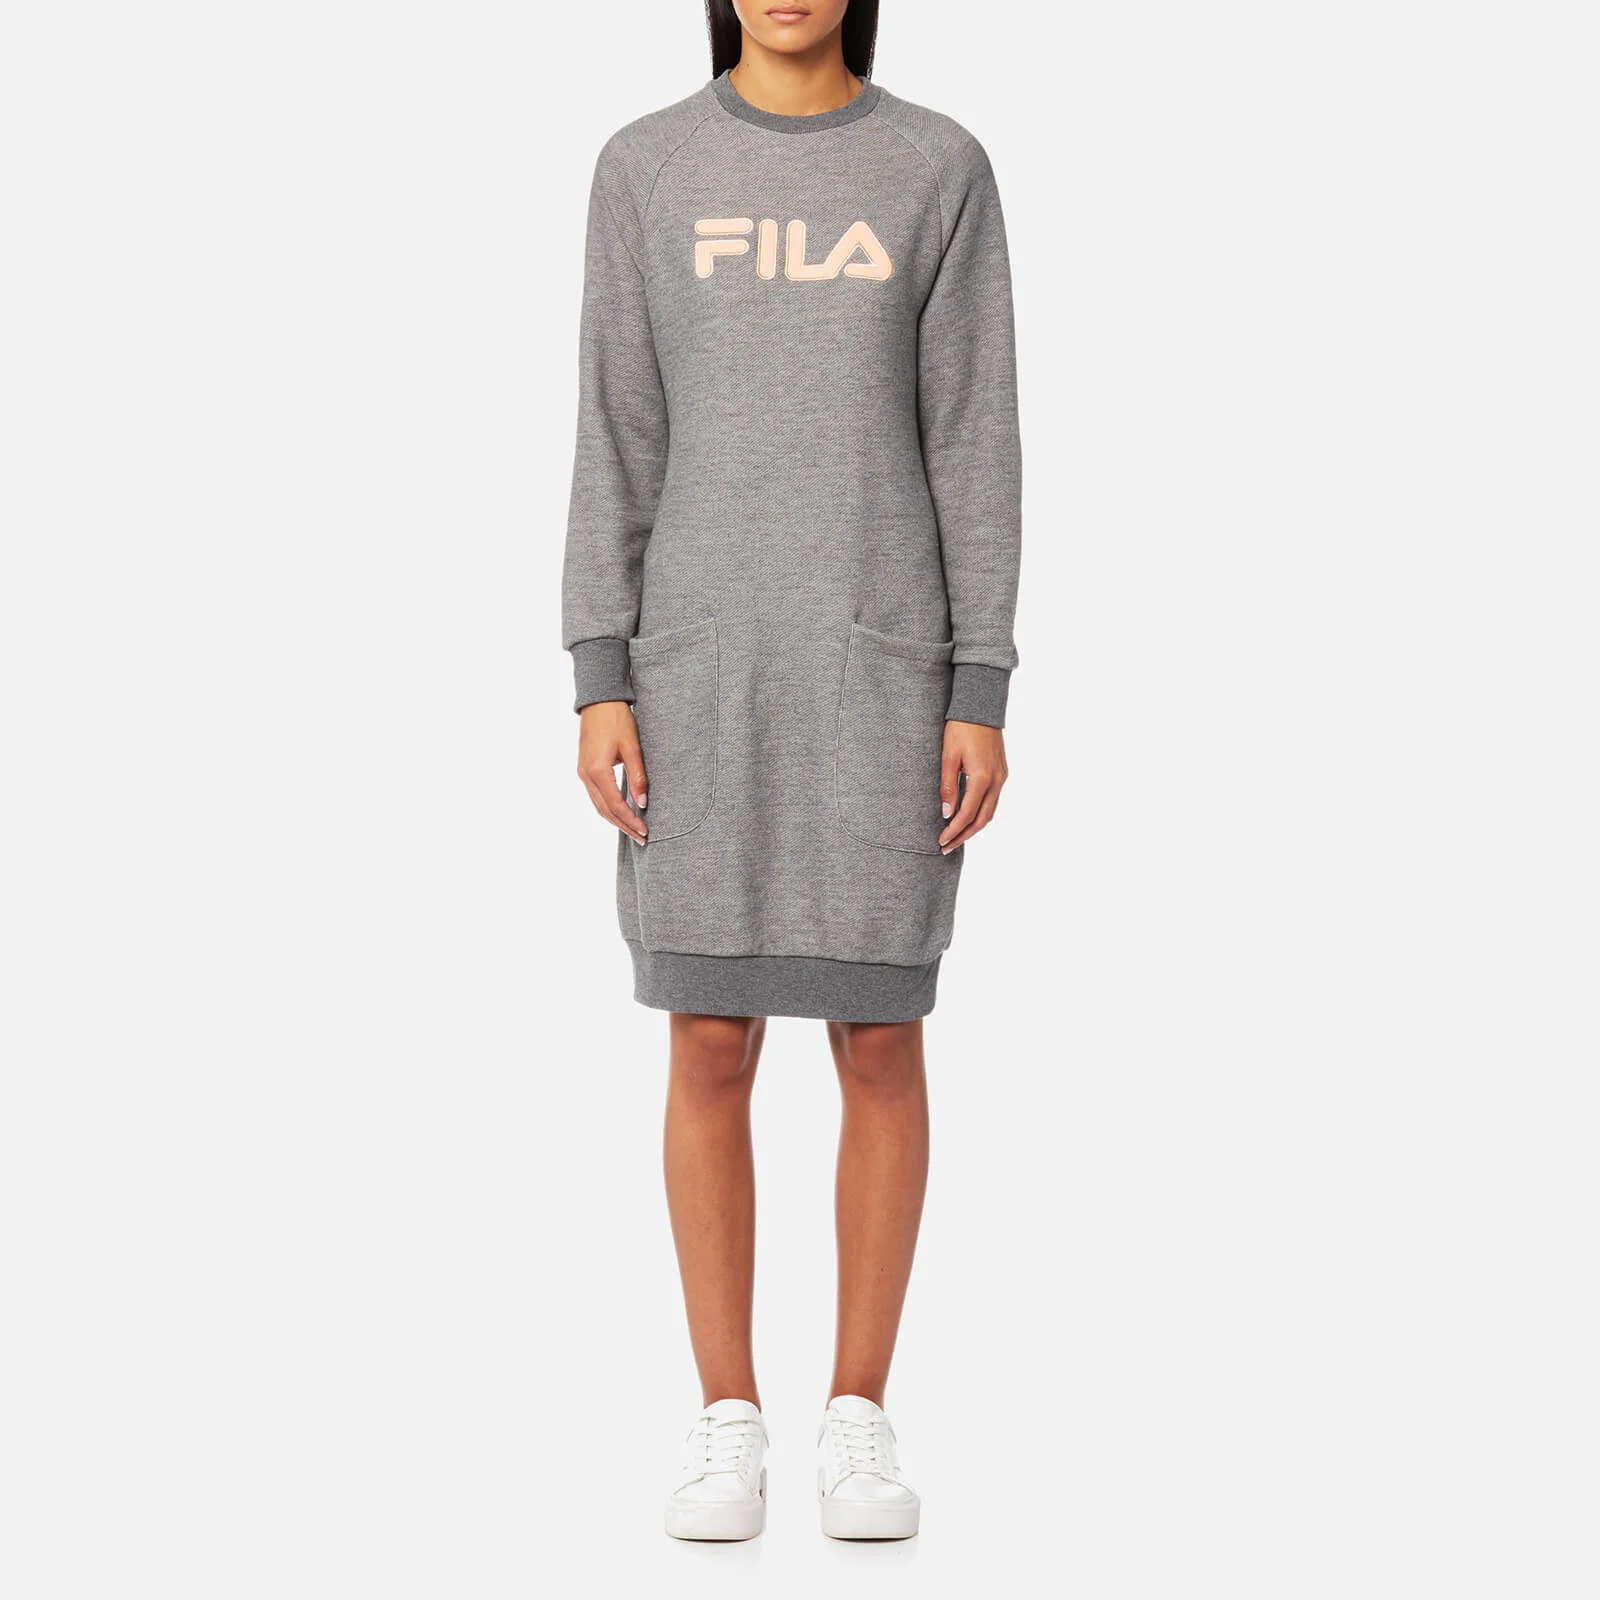 FILA Blackline Women's Courtney Sweater Dress - Grey Marl Image 1